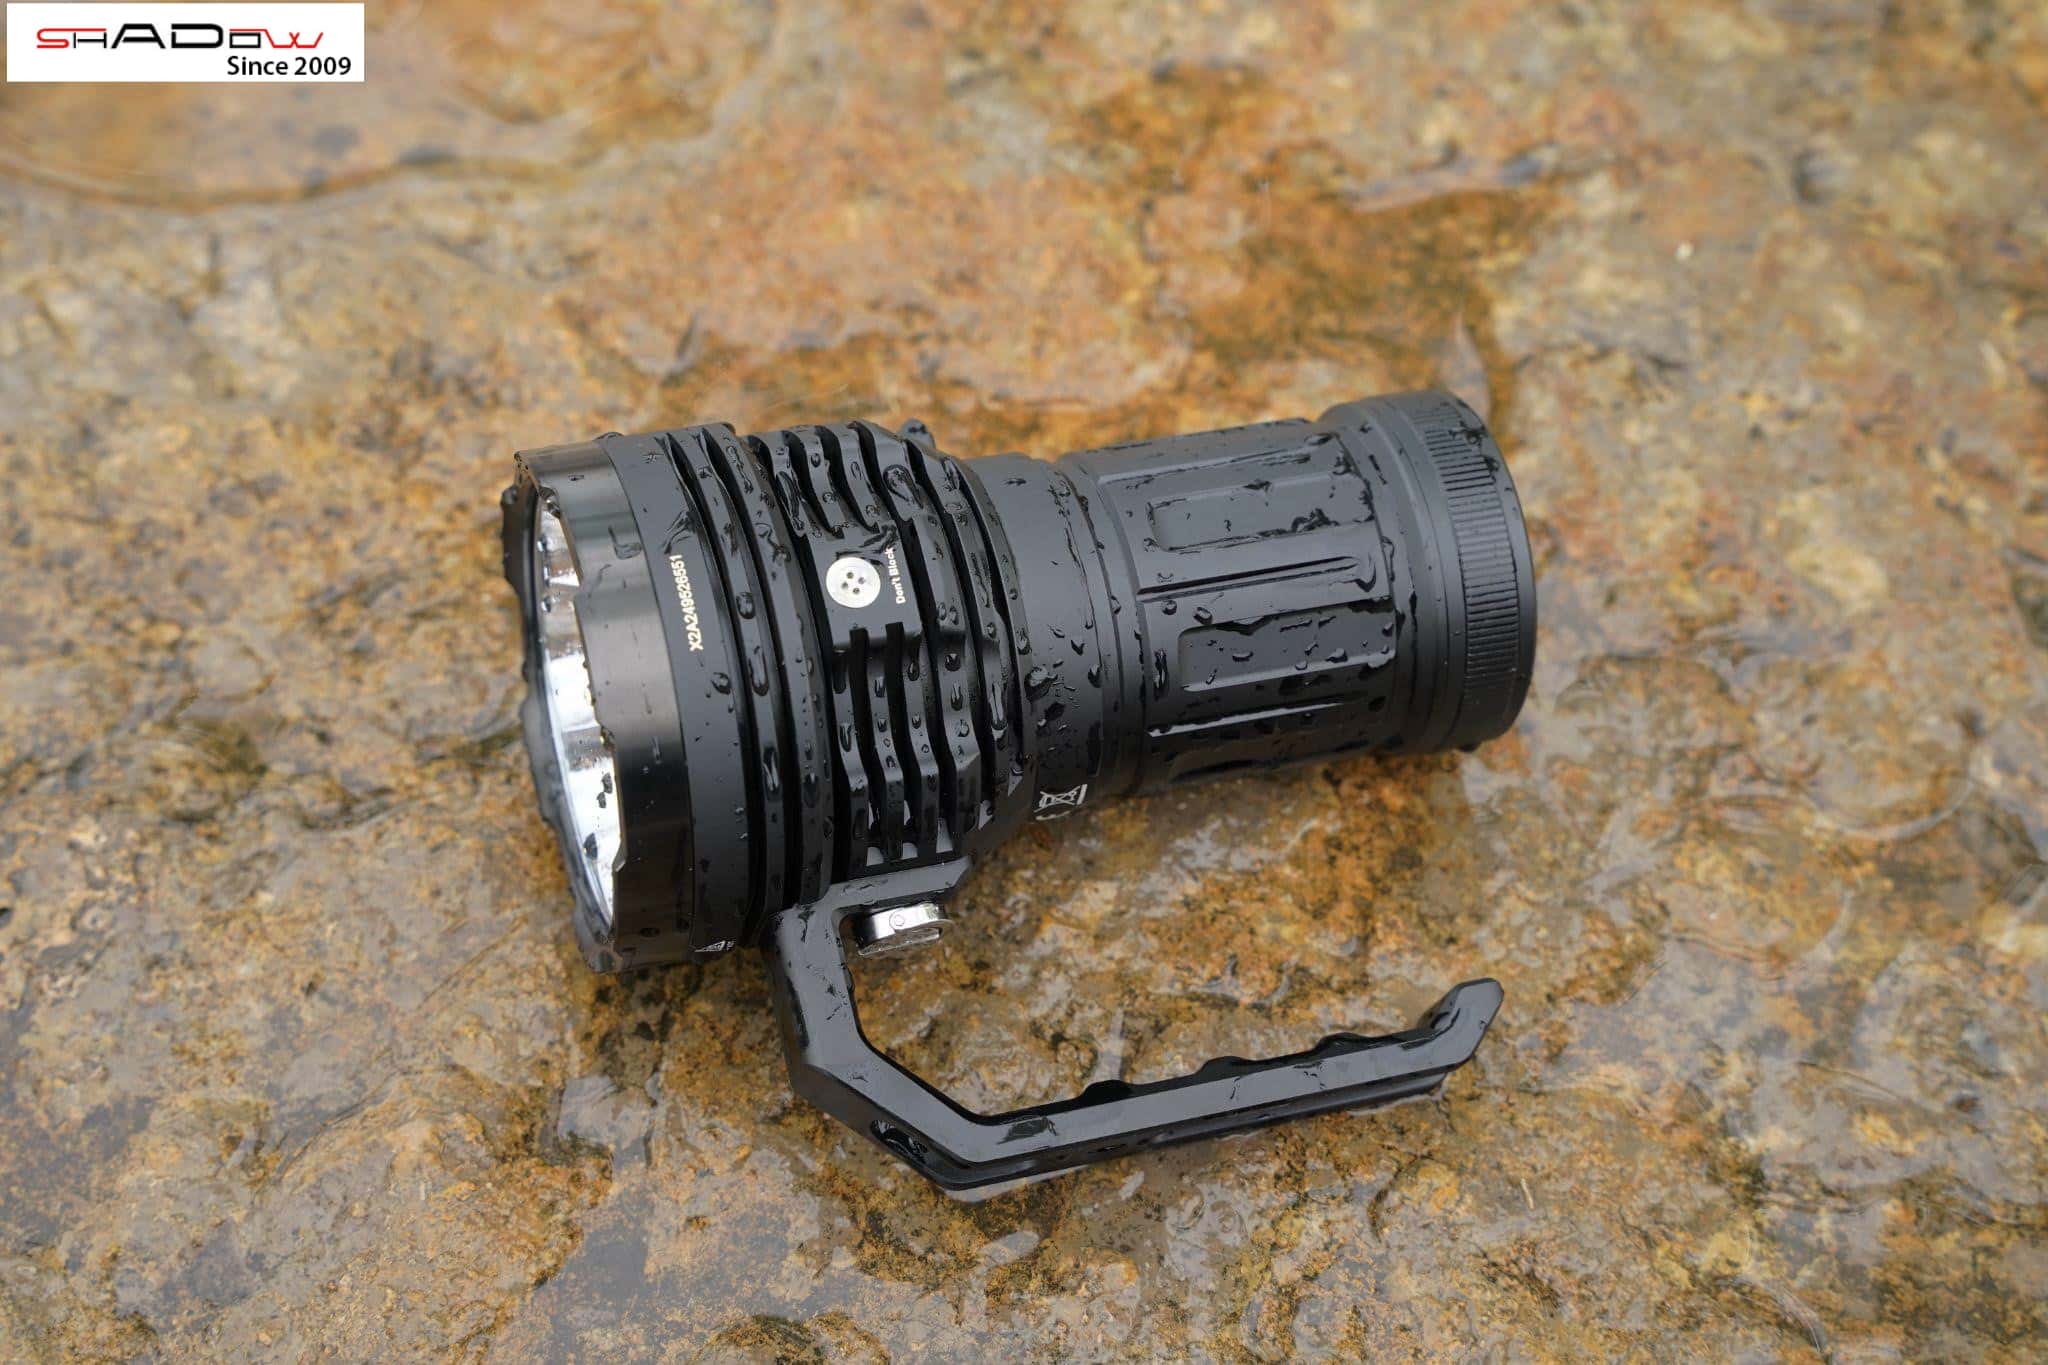 đèn pin Acebeam X50 v2 với độ sáng cao hỗ trợ rất tốt khi đi rừng